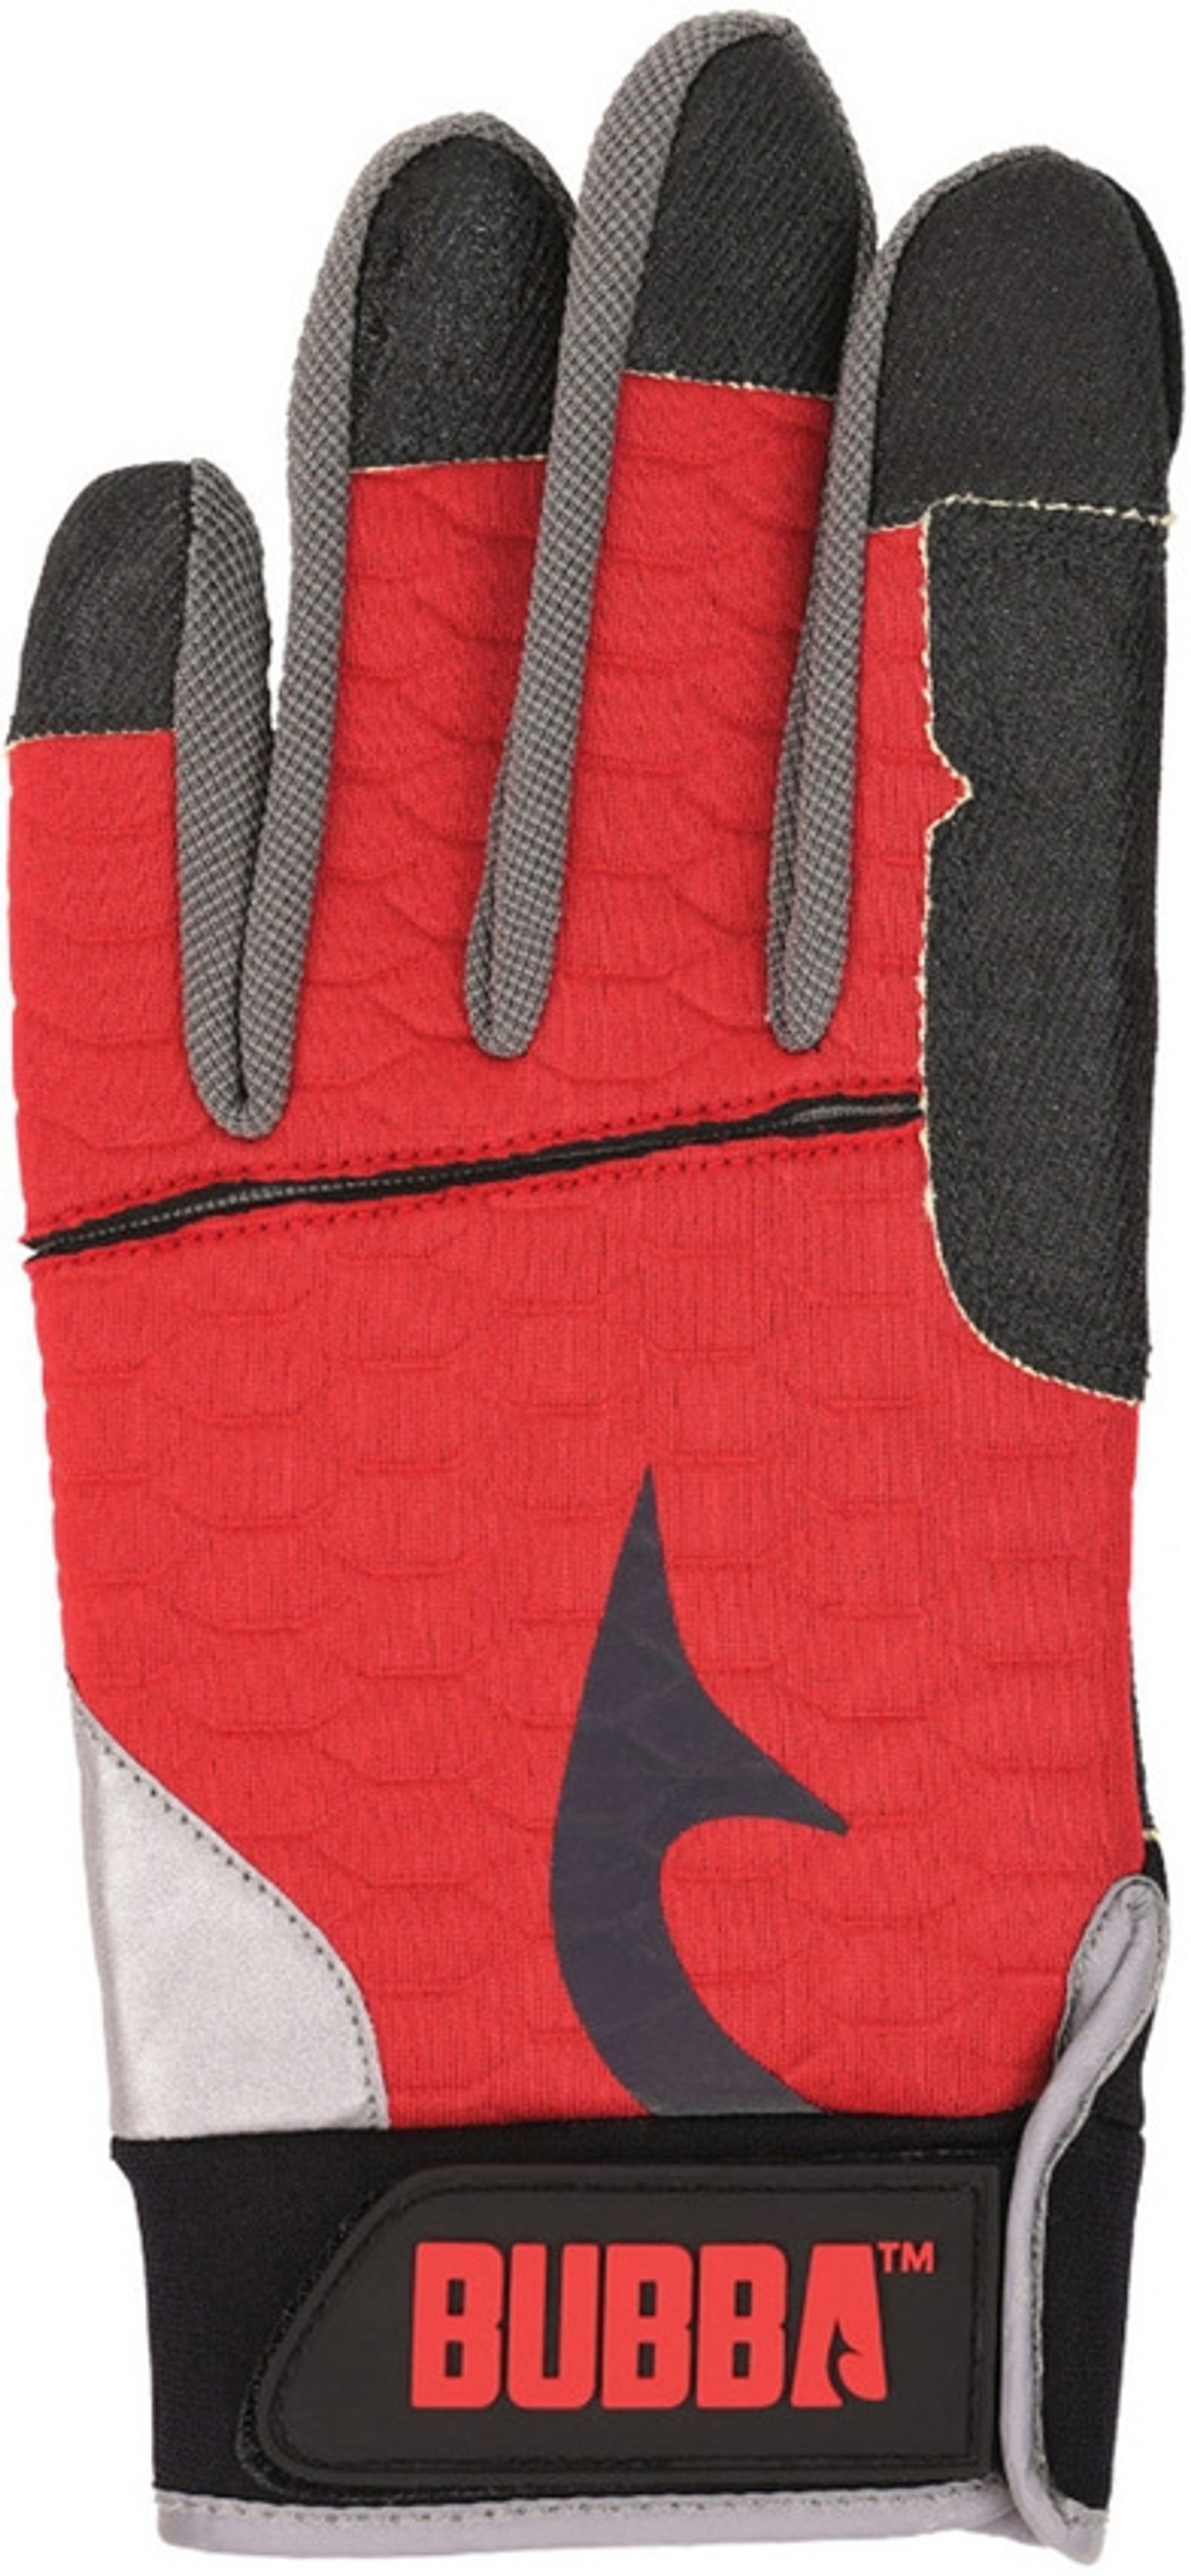 Fillet Gloves Sm/Md